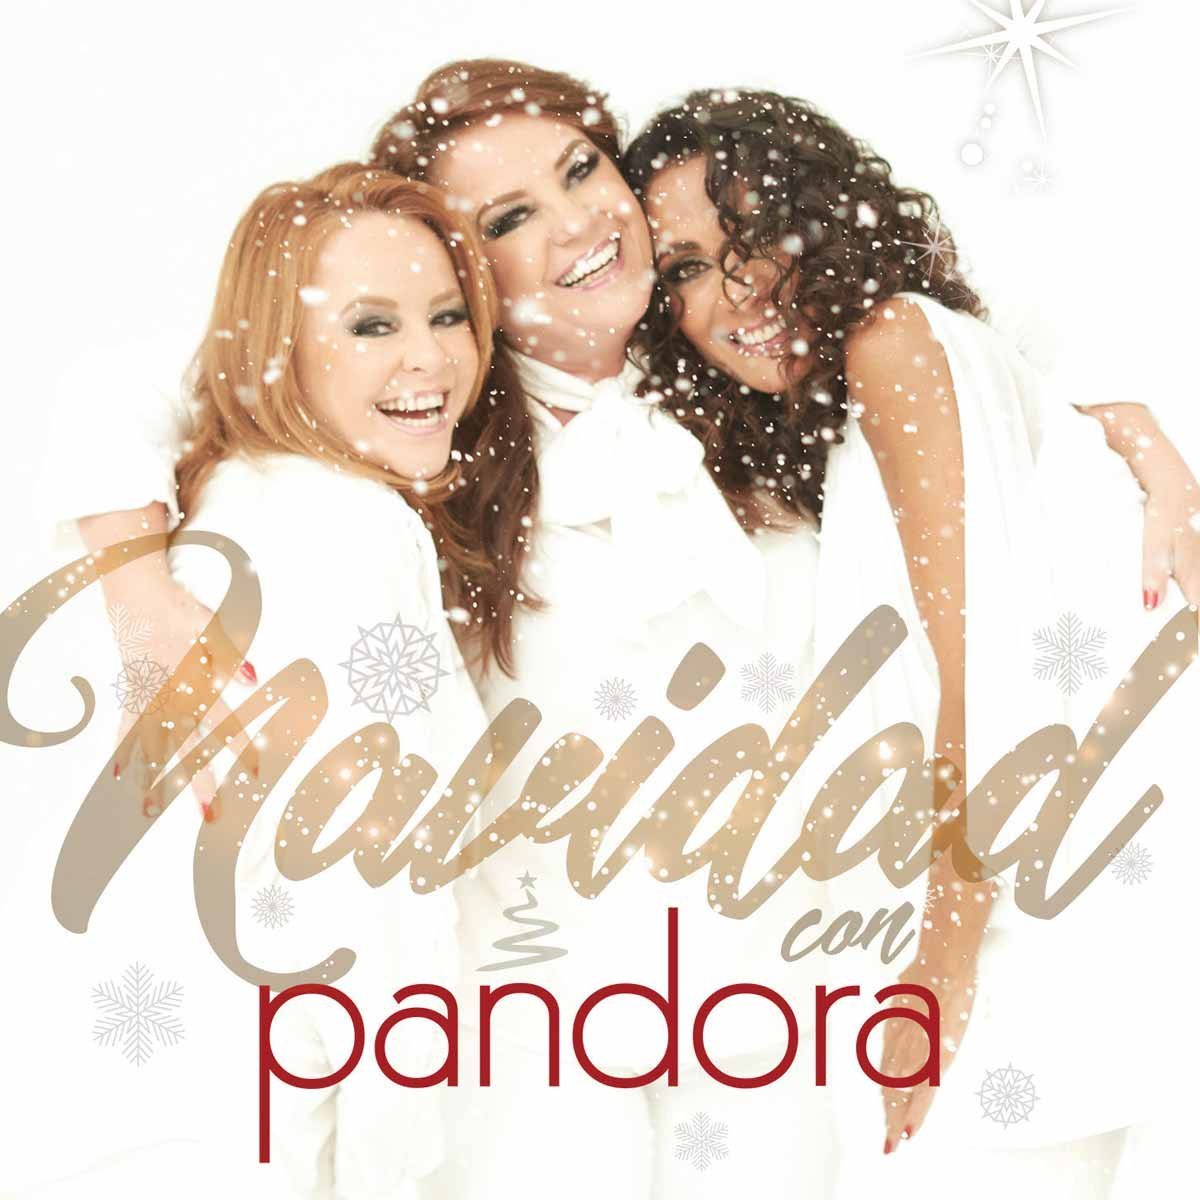 Cd Pandora una Navidad con Pandora